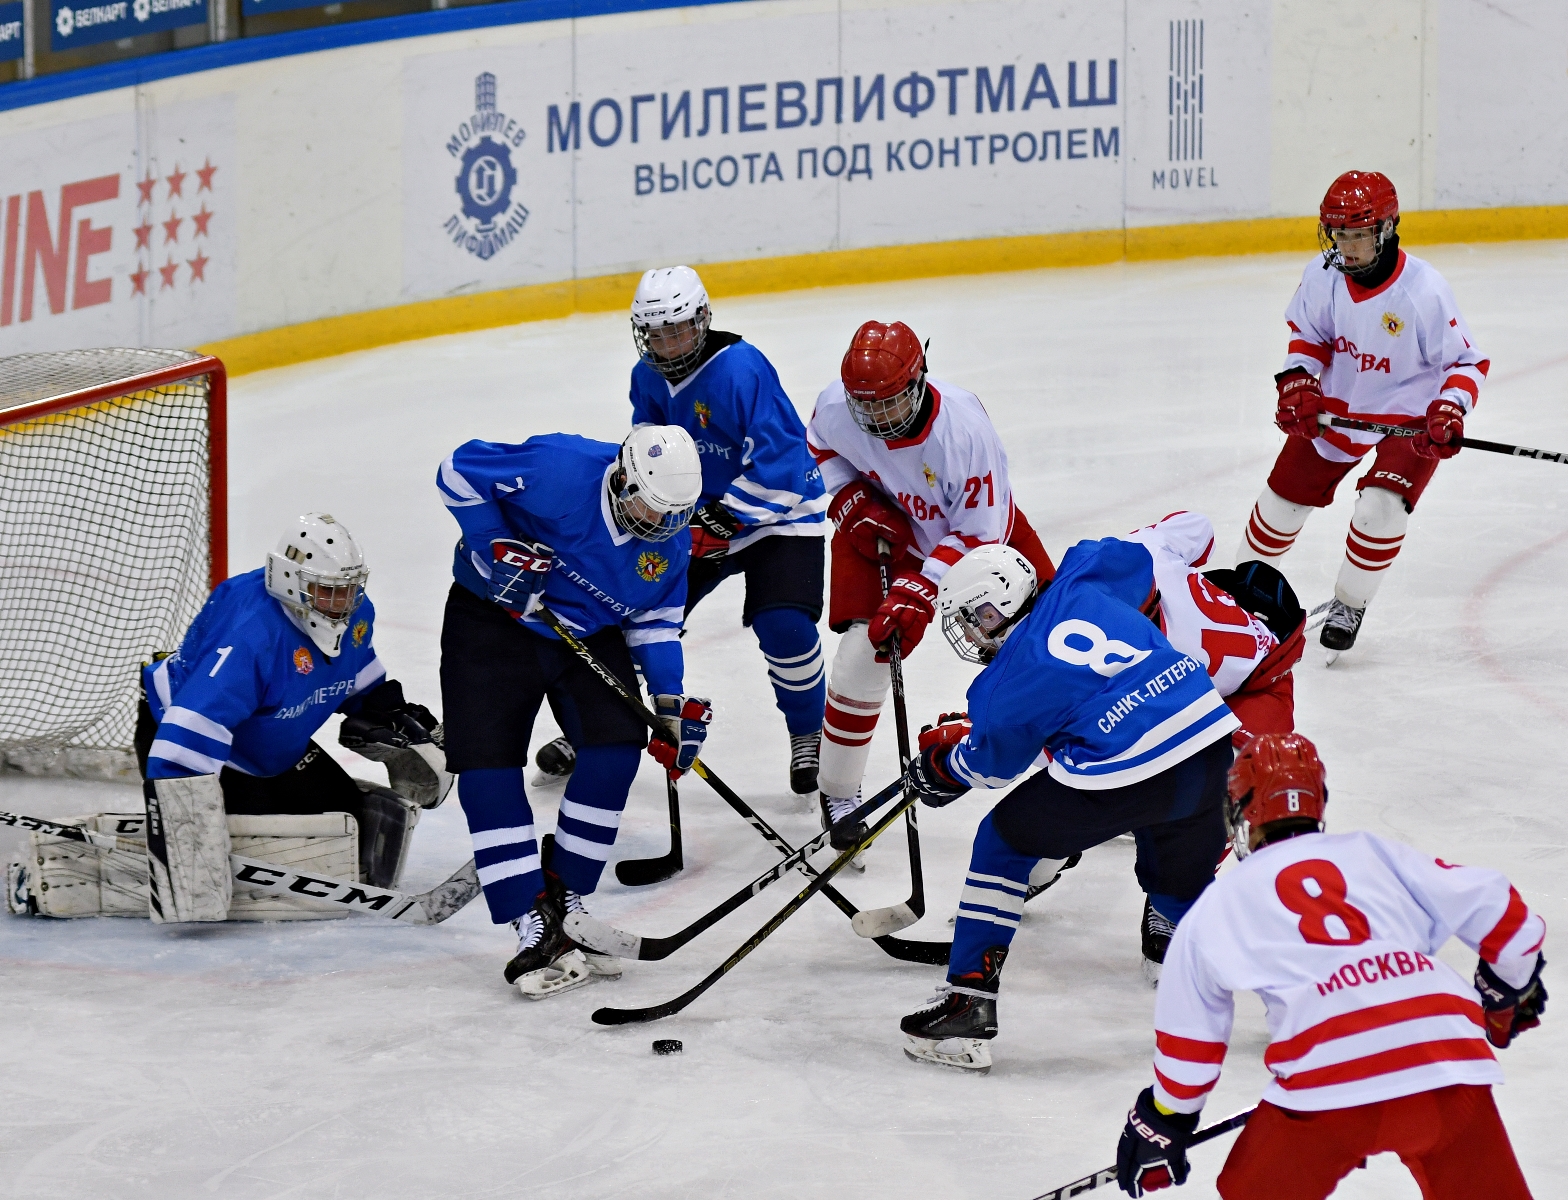 Сборная Москвы по хоккею. Фото команды Аякс 2009.